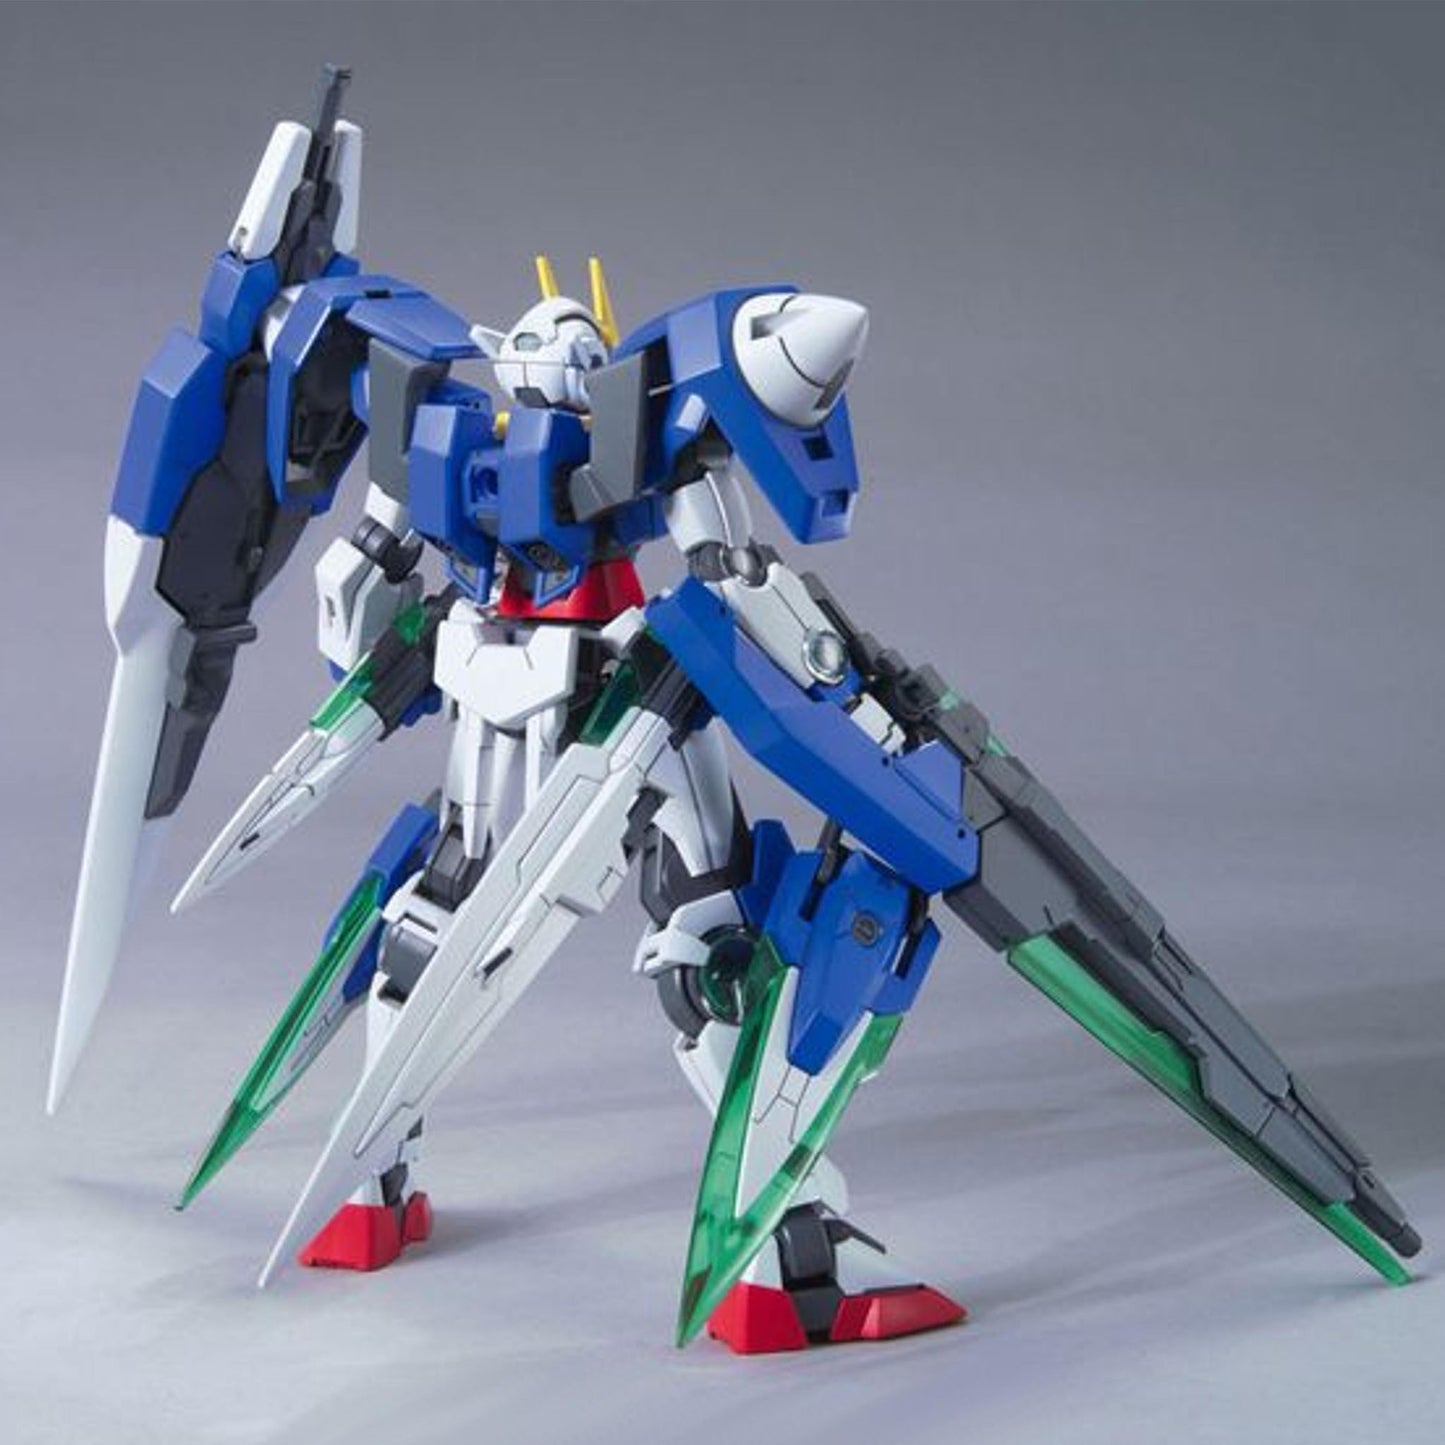 00 Gundam Seven Sword/G (Mobile Suit Gundam 00) HG Gunpla Model Kit